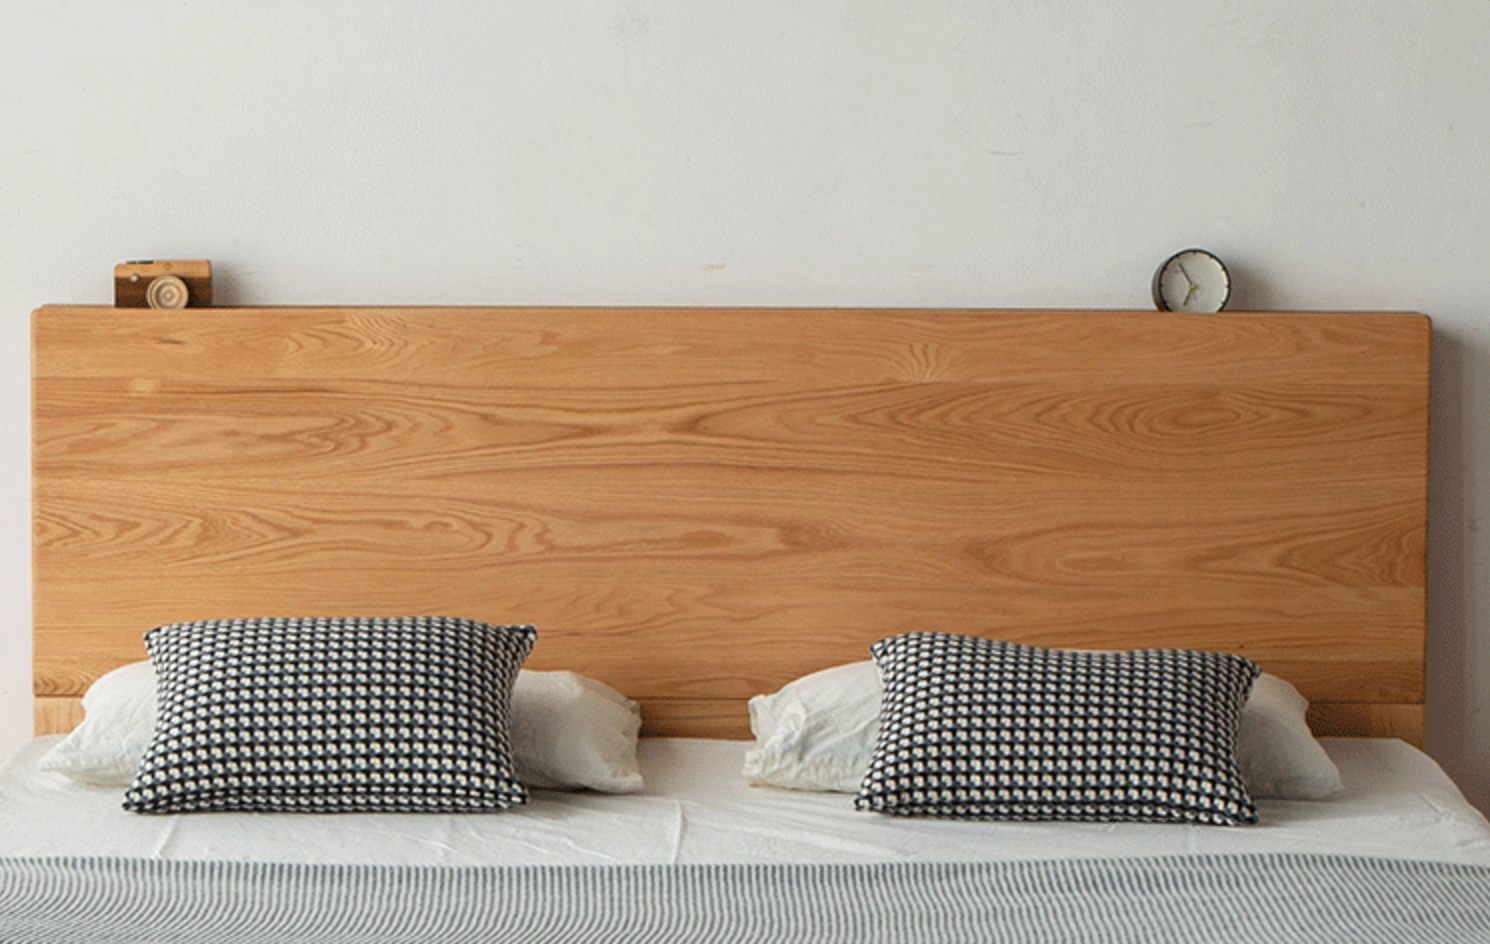 سرير من خشب البلوط مع درج وسرير هيدروليكي مع حجرات تخزين